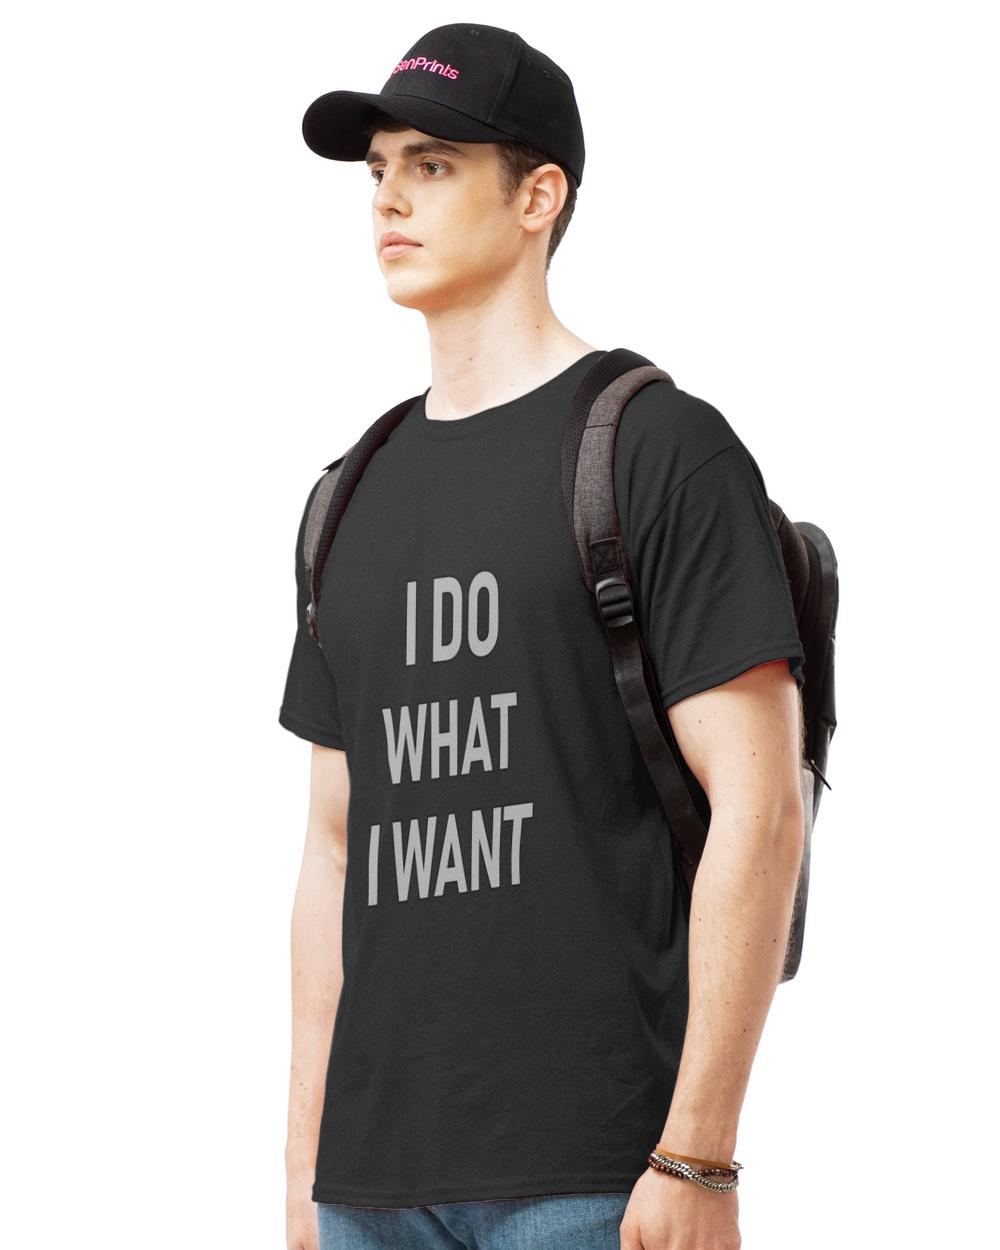 Original do what you want t-shirt